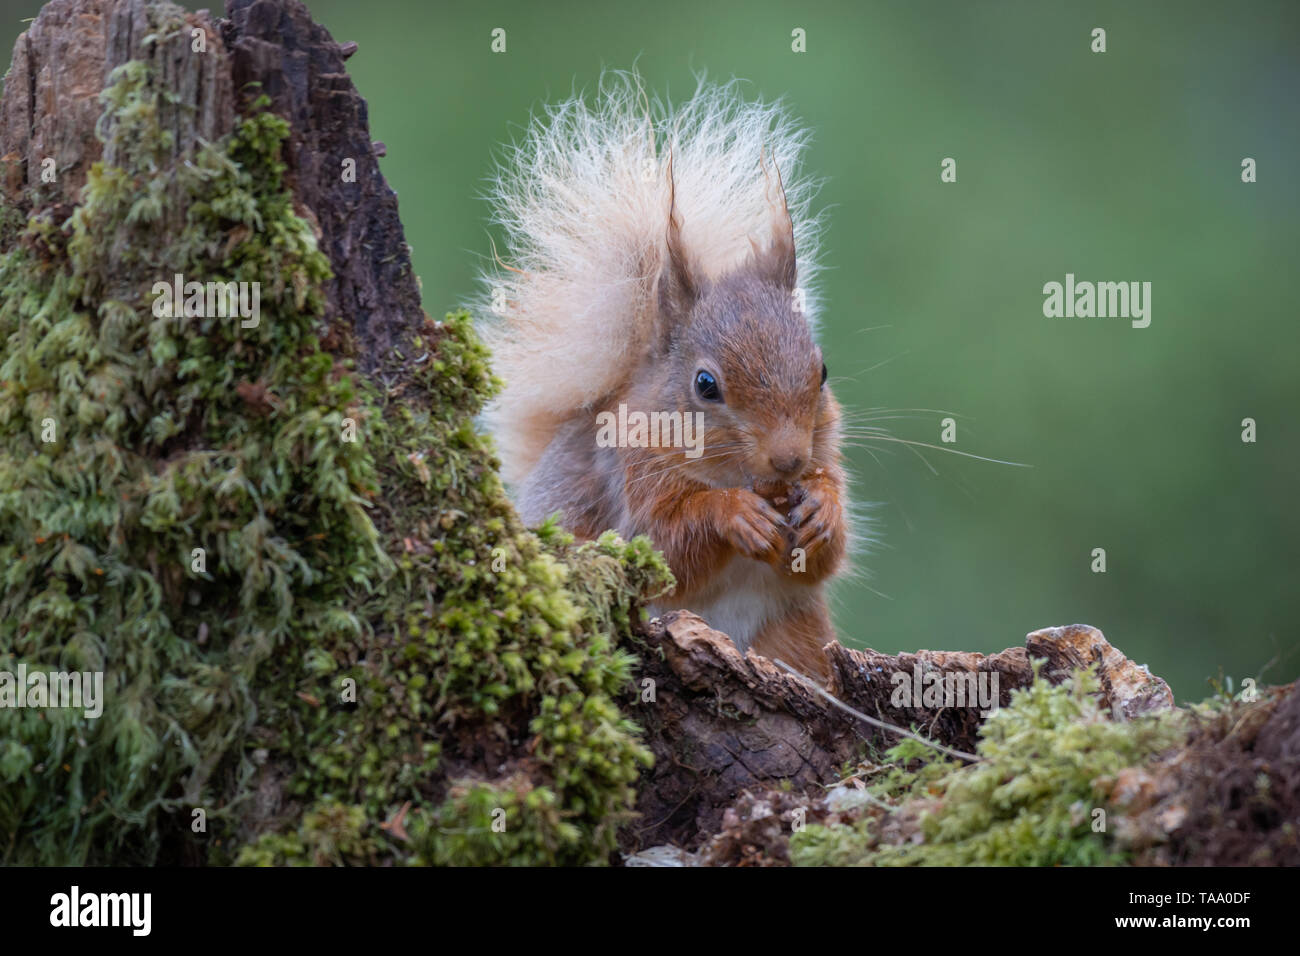 Una parte anteriore immagine ritratto di uno scoiattolo rosso con una coda folta seduto su una vecchia coperta lichene ceppo di albero di mangiare una nocciola Foto Stock